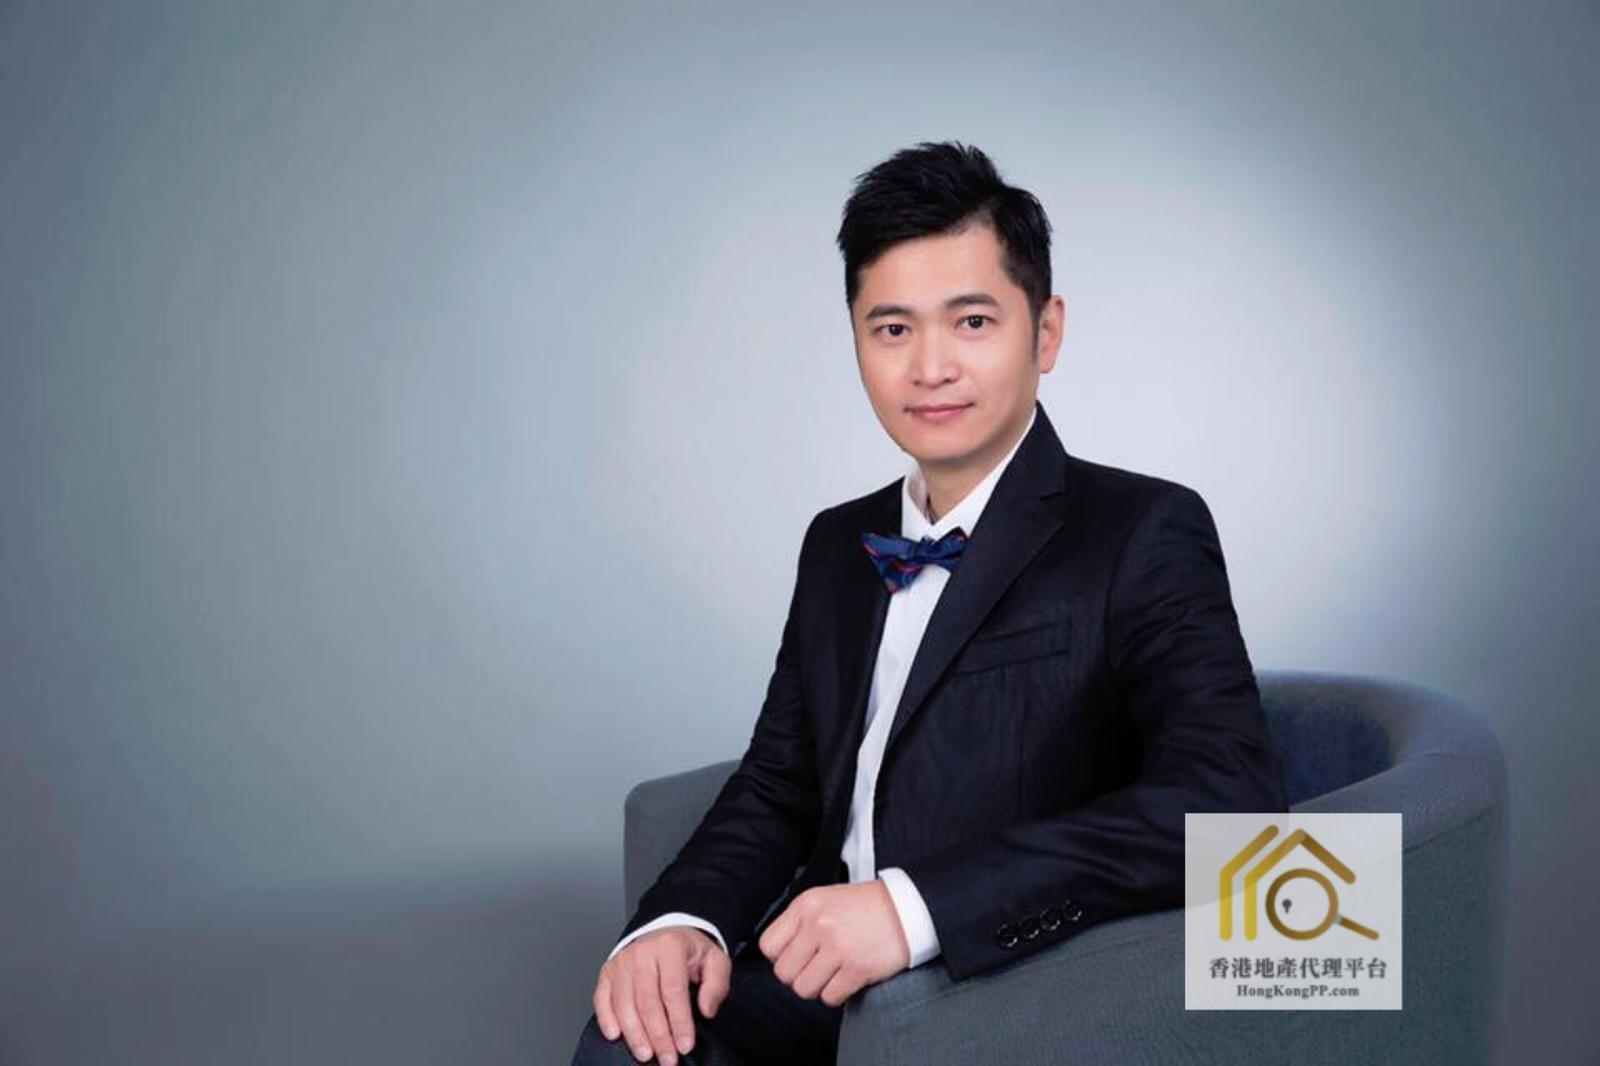 香港地產代理平台 HK Estate Agent 地產代理公司 / 地產代理人: CJ Leung 